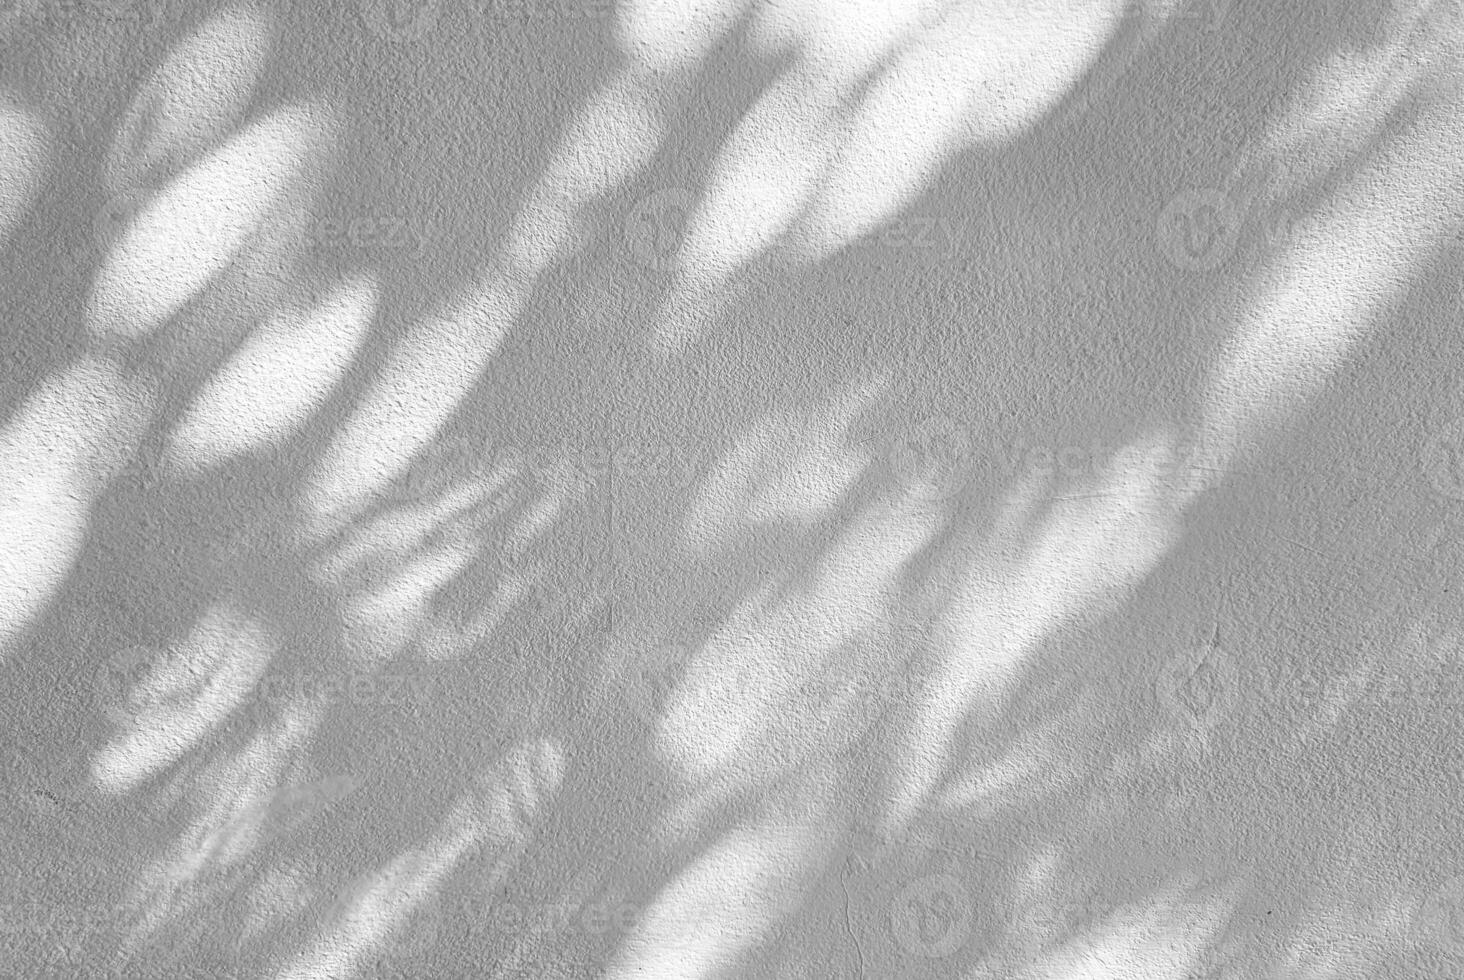 ligero haz, bokeh y sombra en hormigón pared textura fondo, adecuado para haciendo difuminar a multiplicar y cubrir en producto presentación. foto